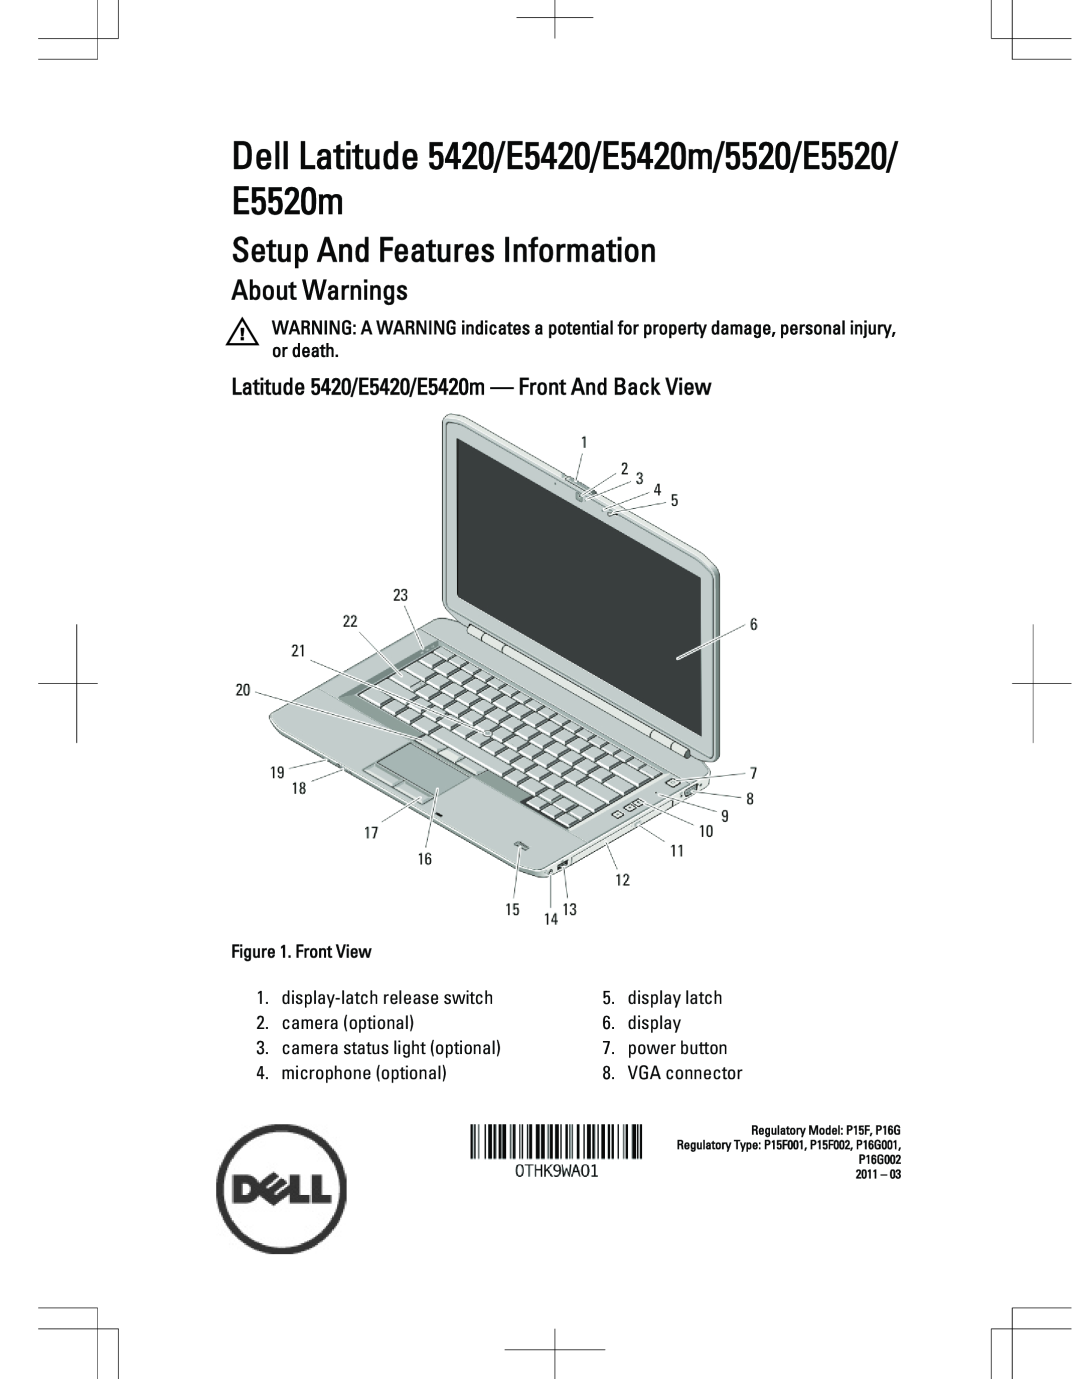 Dell manual Latitude 5420/E5420/E5420m - Front And Back View, Dell Latitude 5420/E5420/E5420m/5520/E5520/ E5520m 